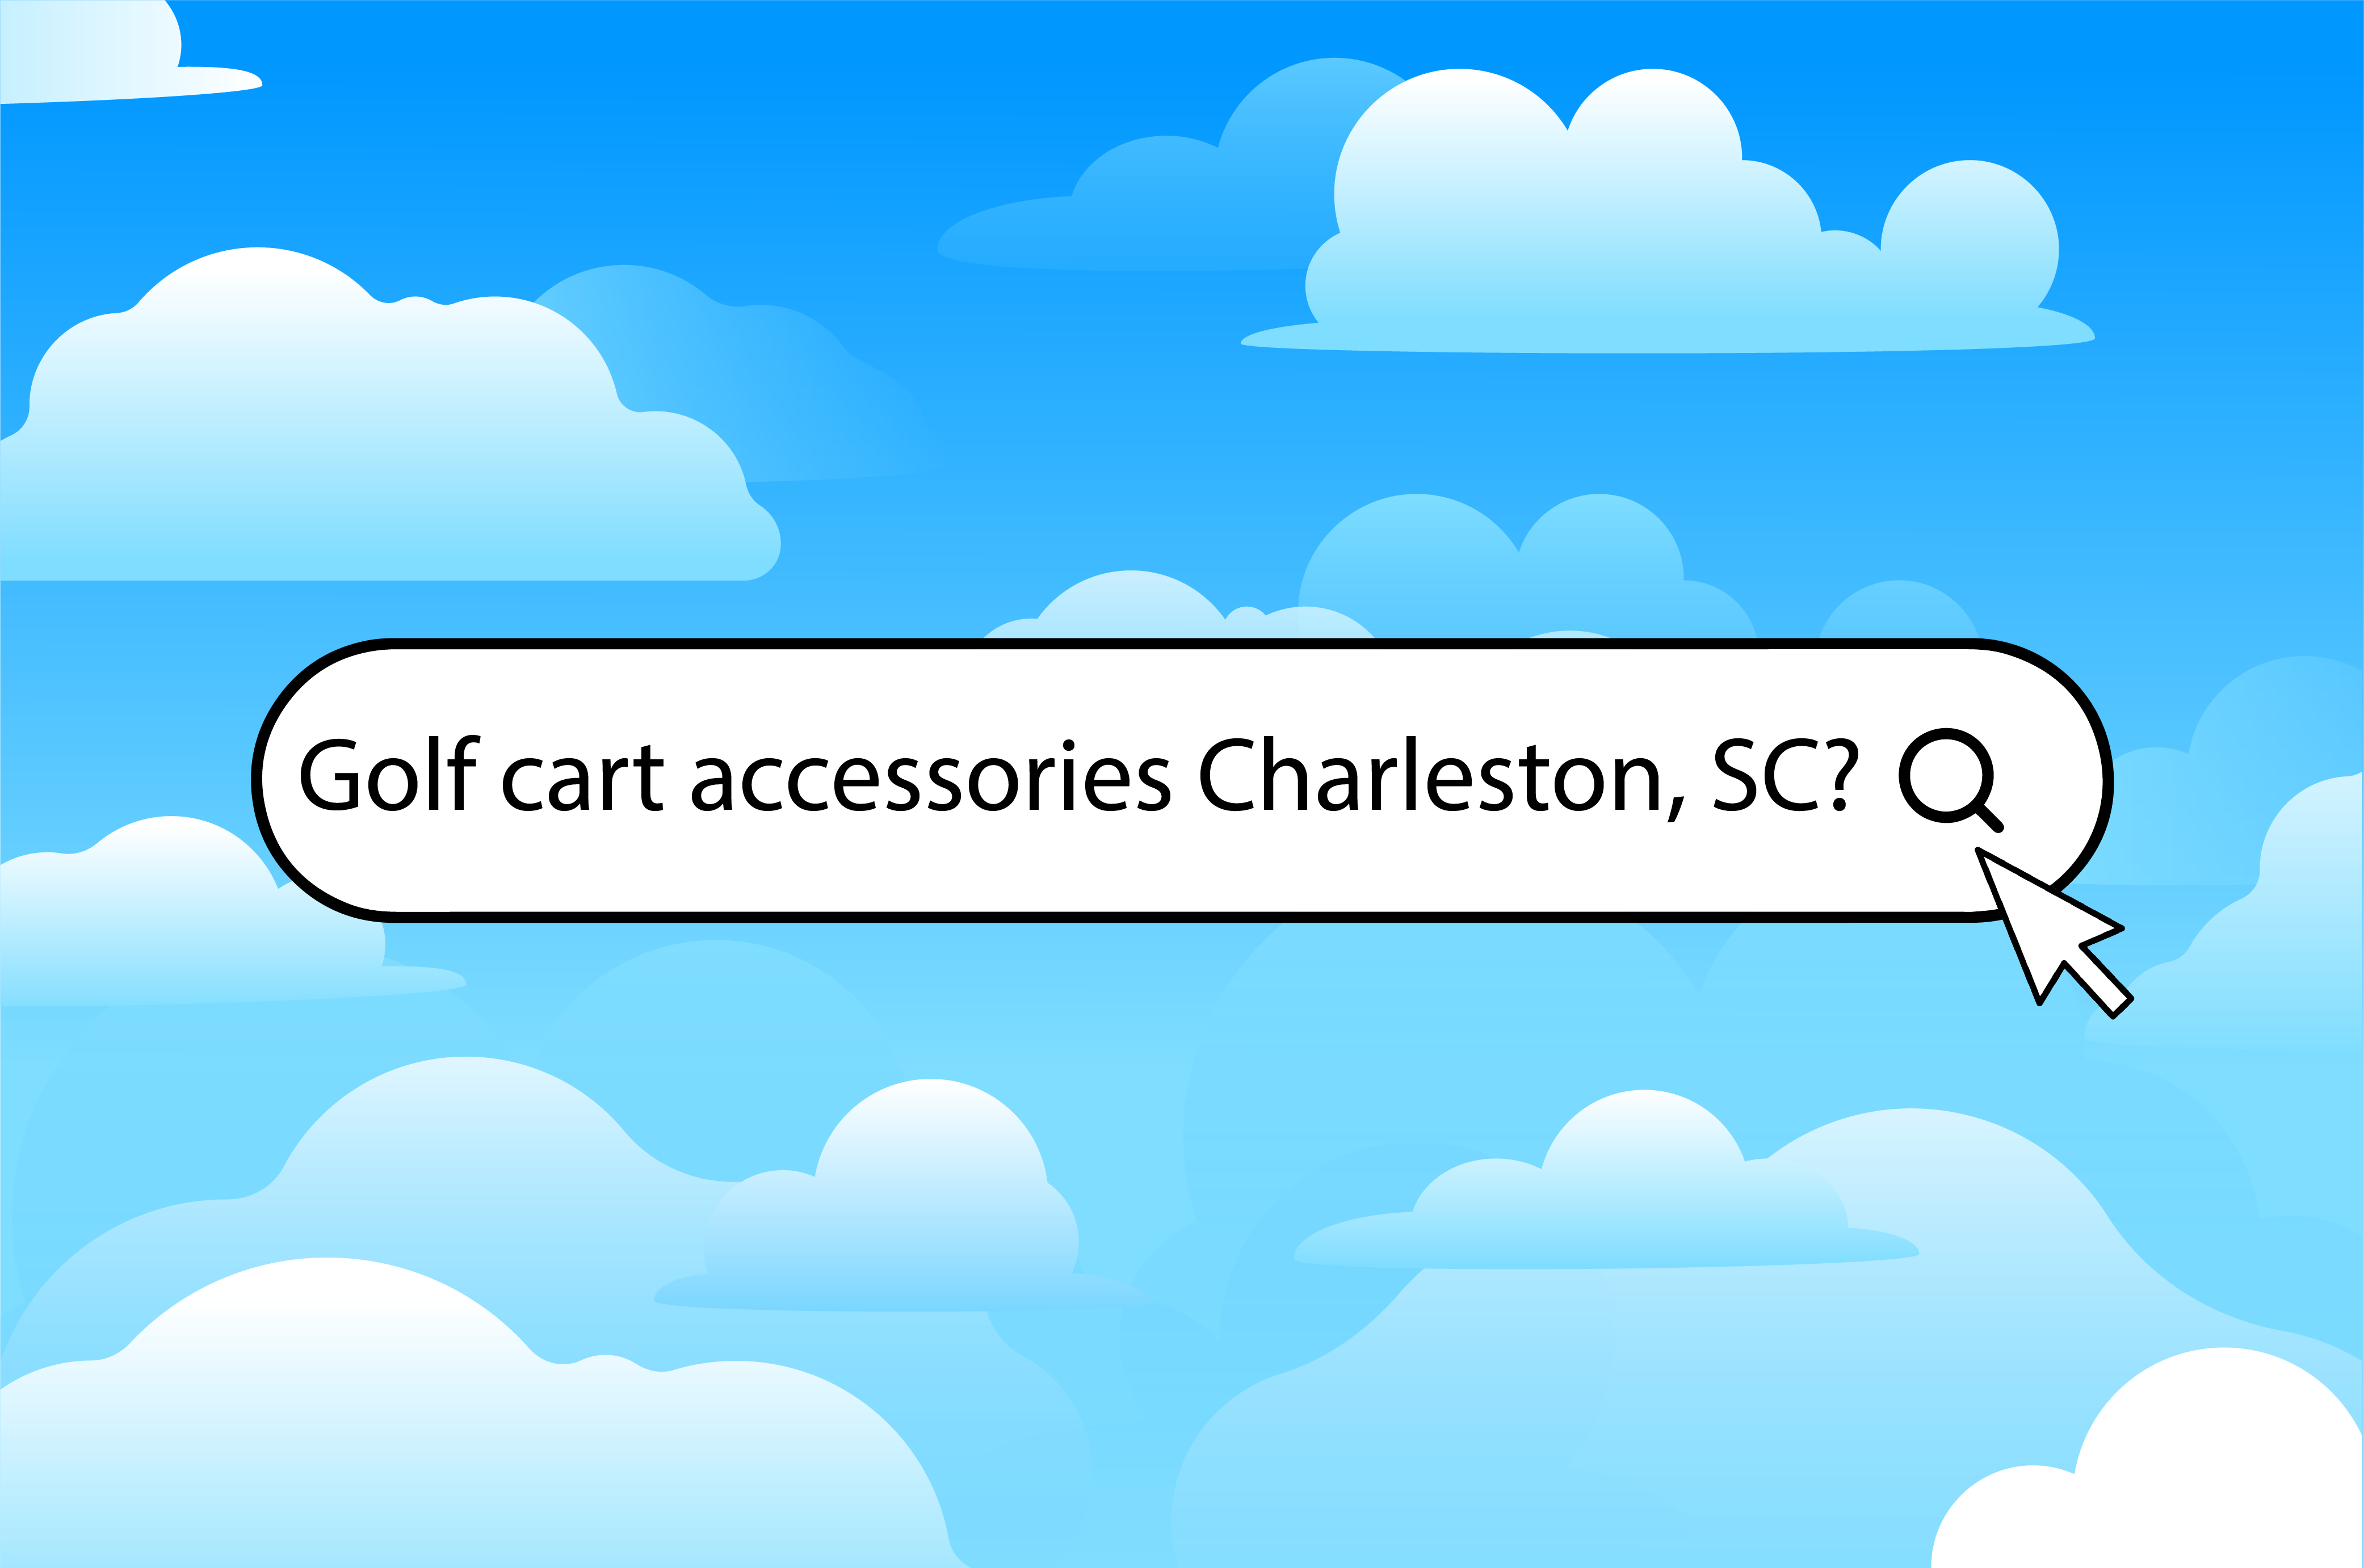 Three way to find golf cart accessories in Charleston, SC